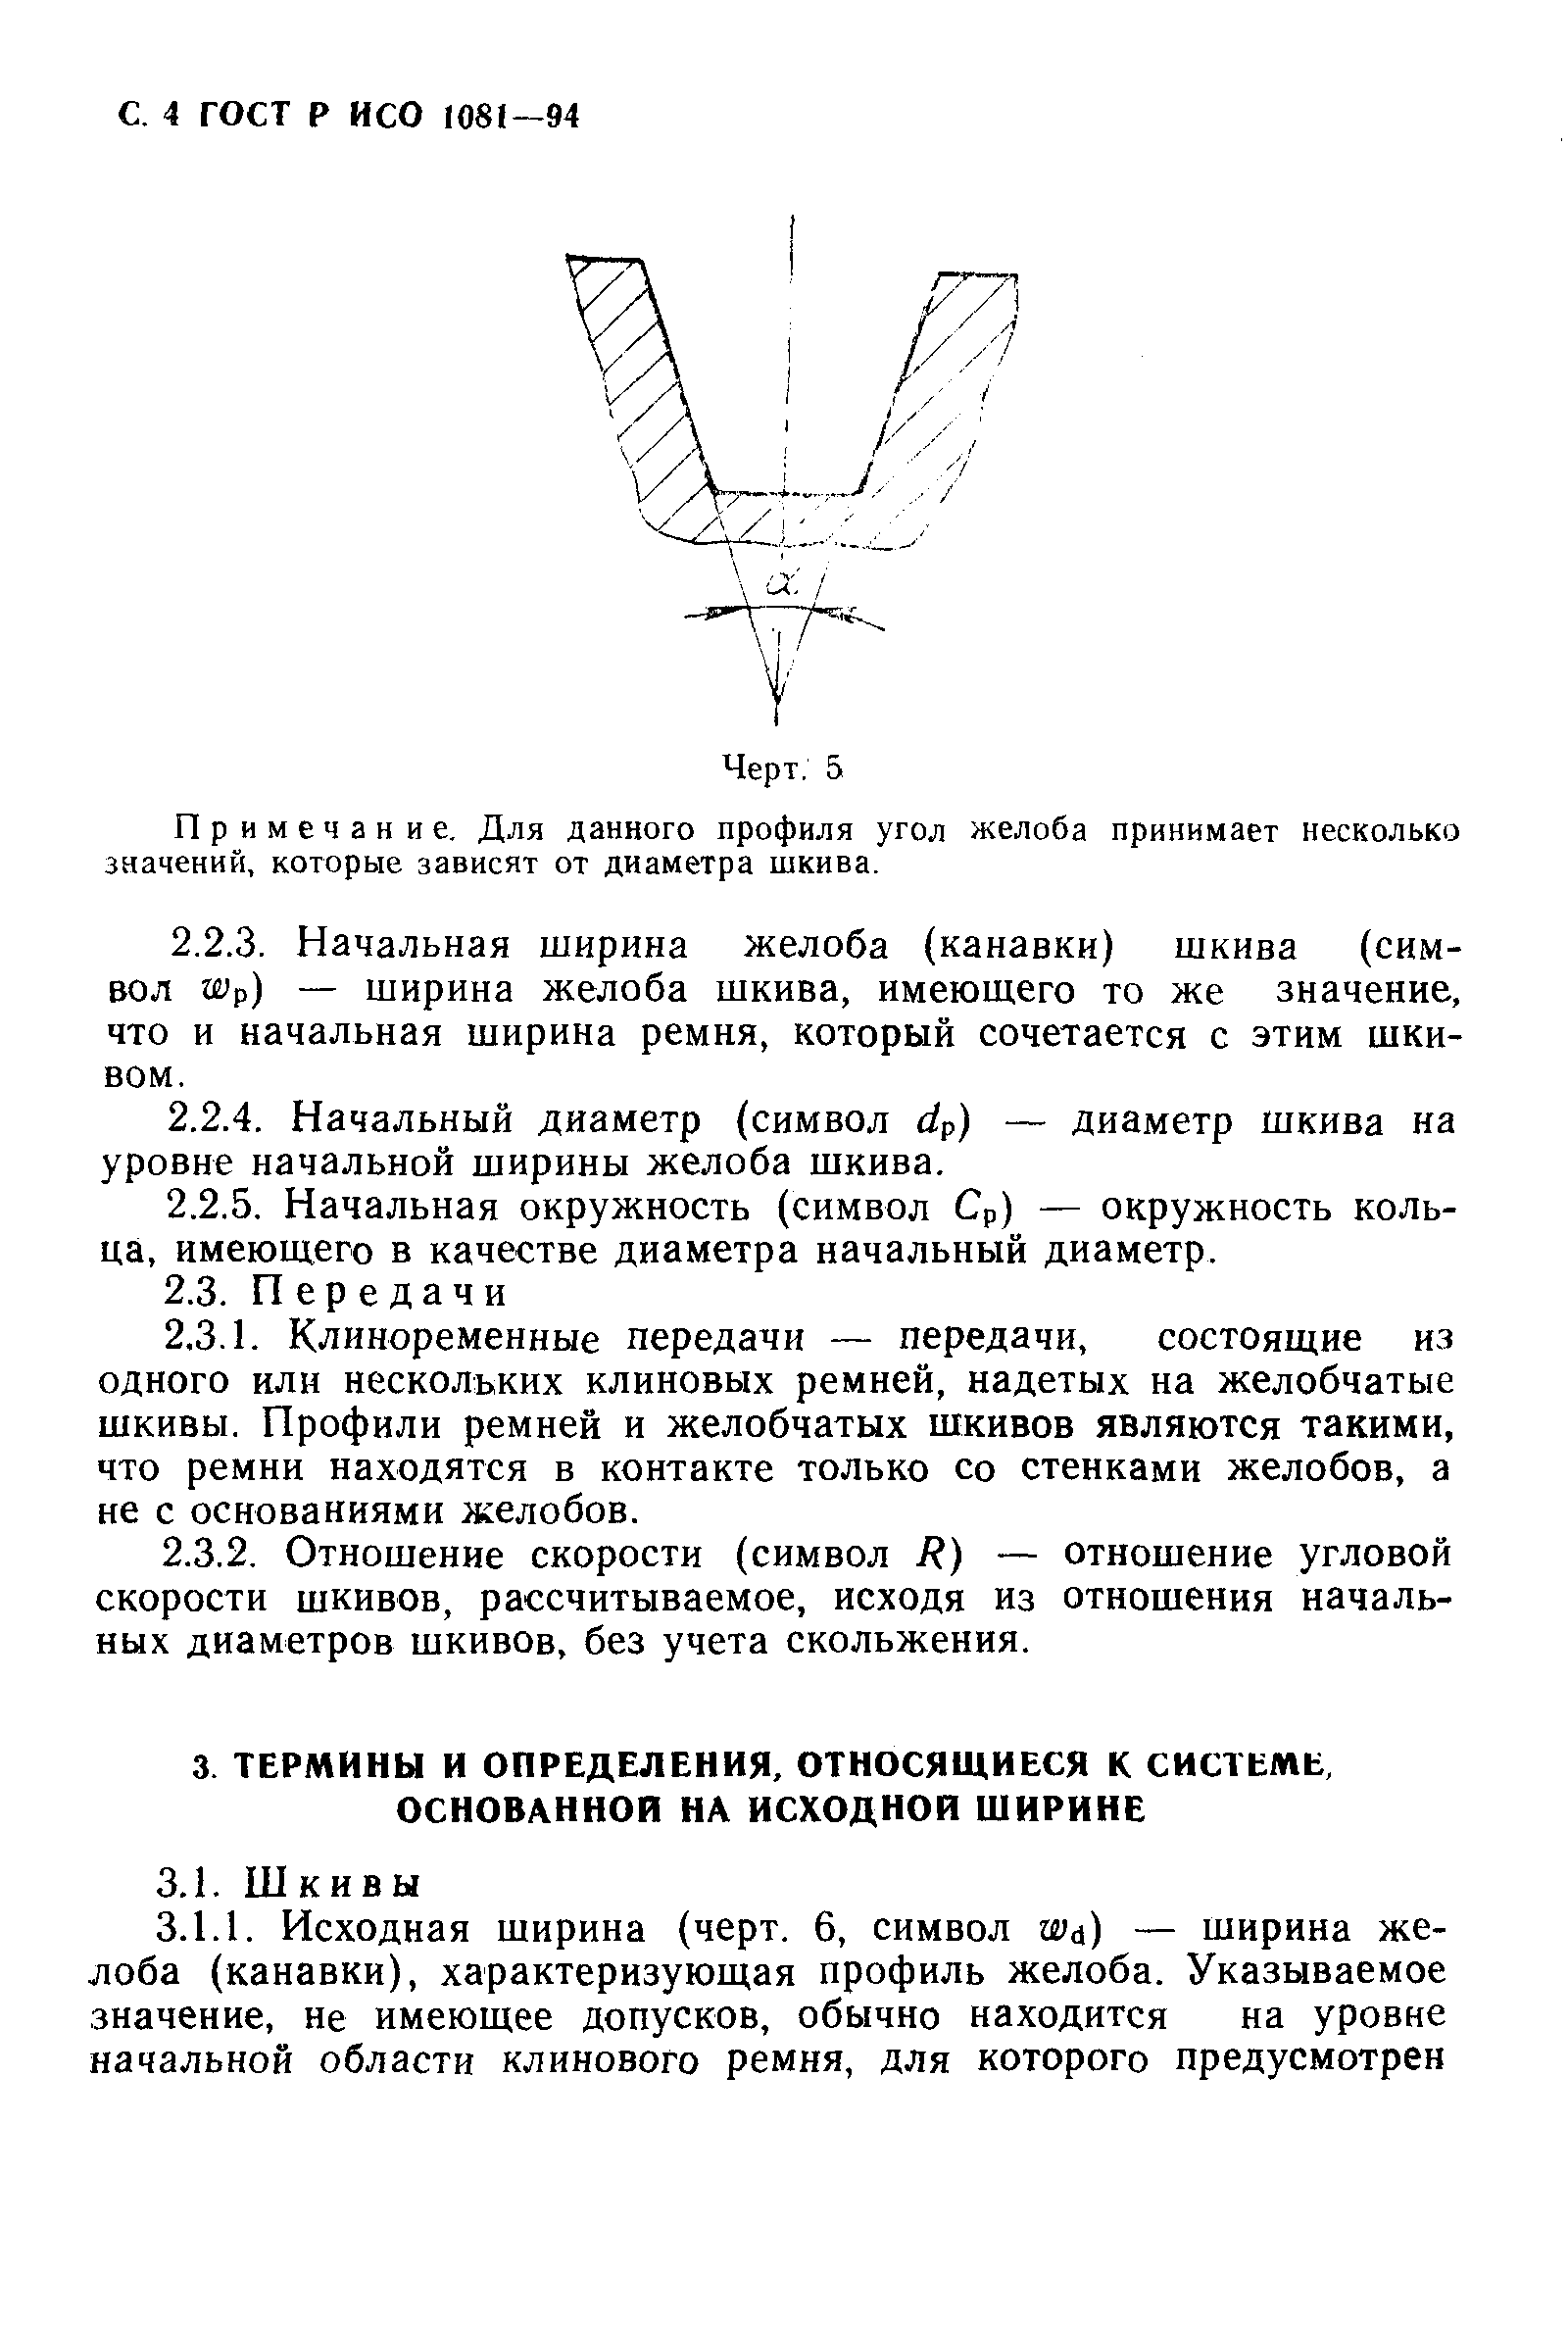 ГОСТ Р ИСО 1081-94